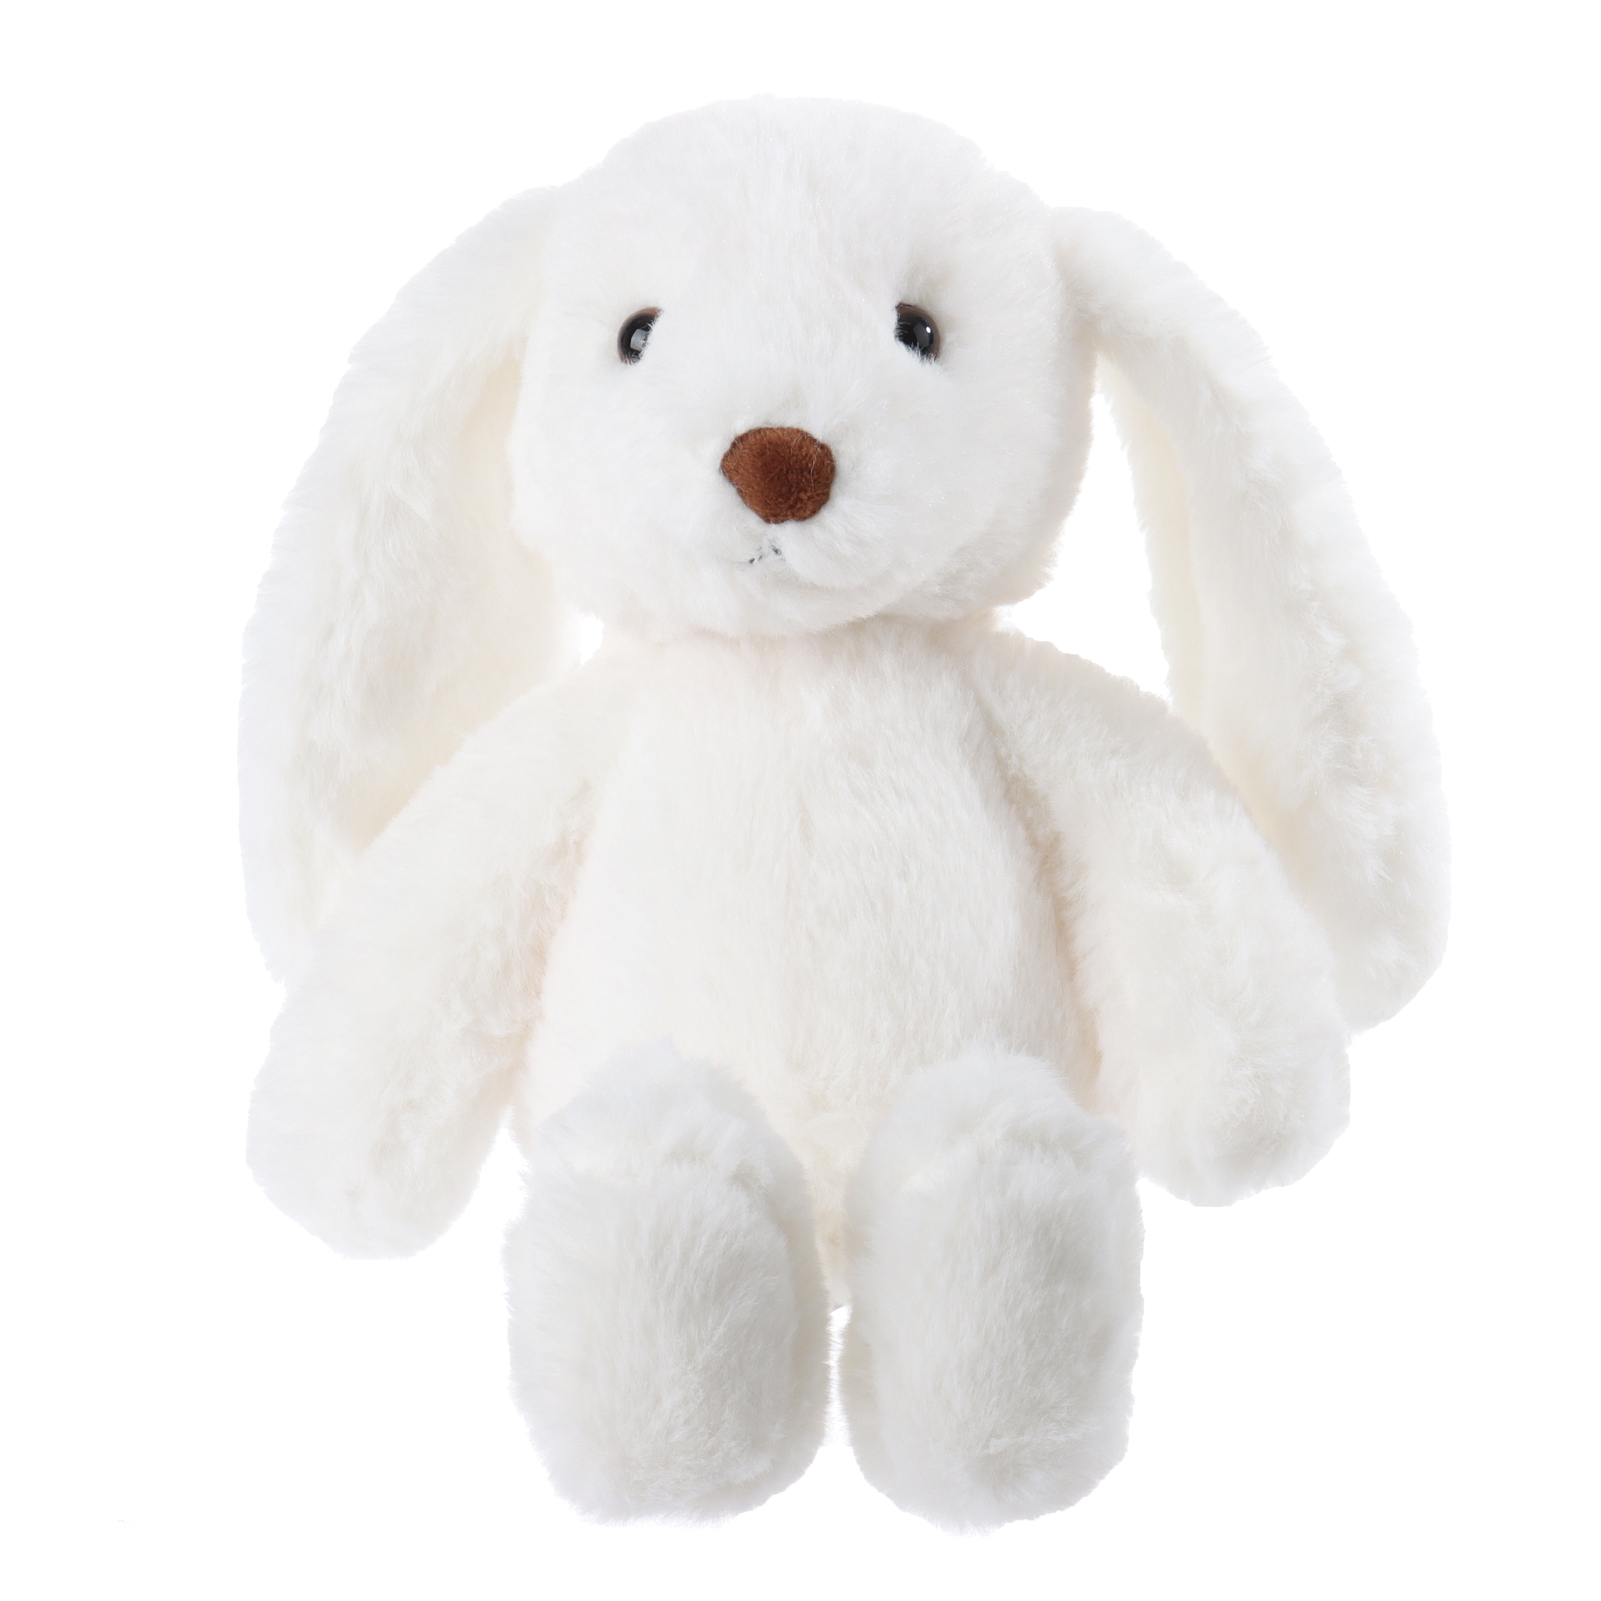 Apricot Lamb Cute White Bunny Stuffed Animal Soft Plush Toys